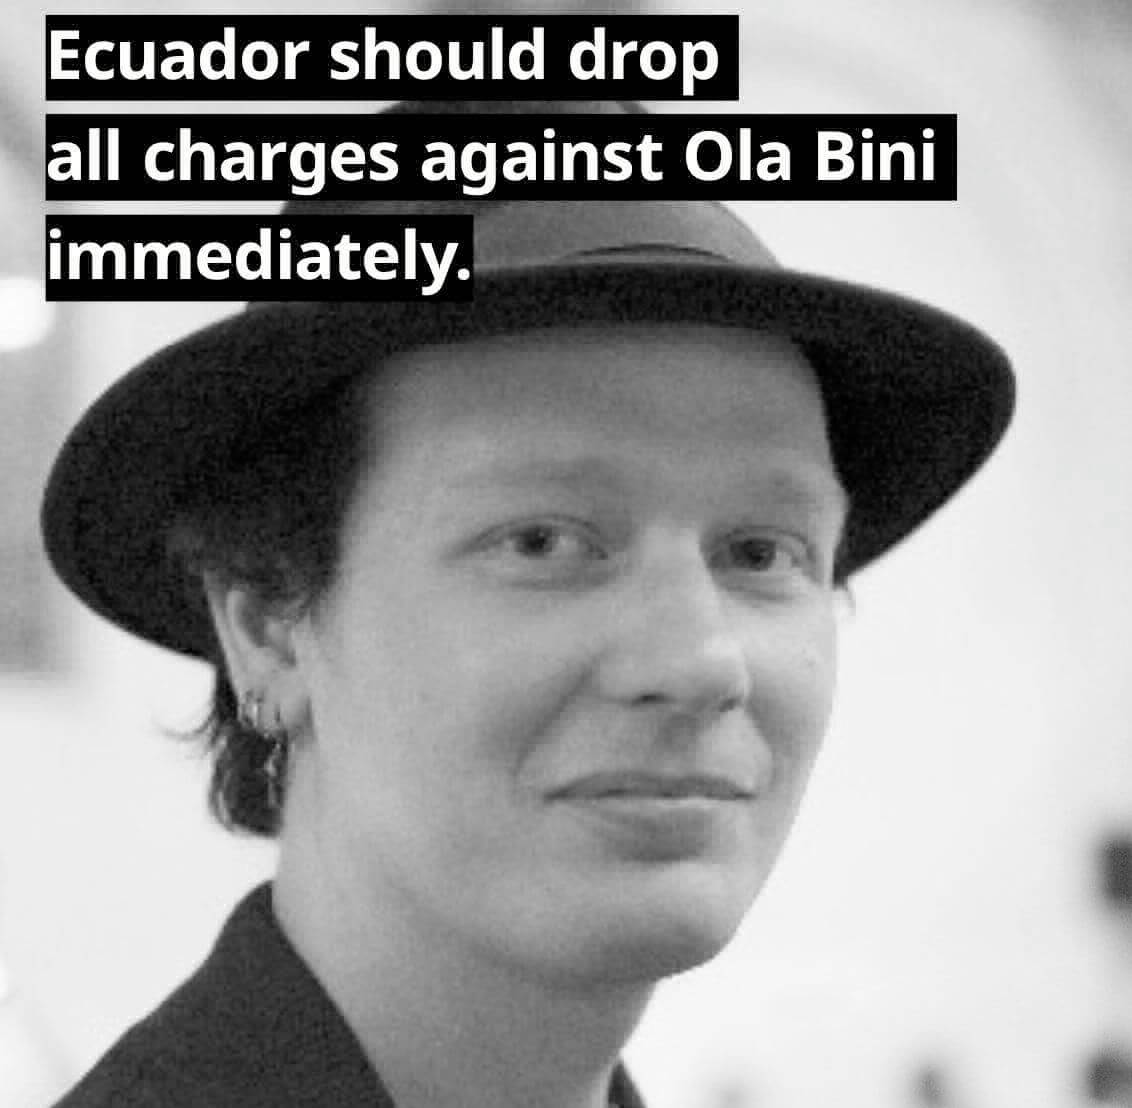 Ola Bini in Ecuador verhaftet